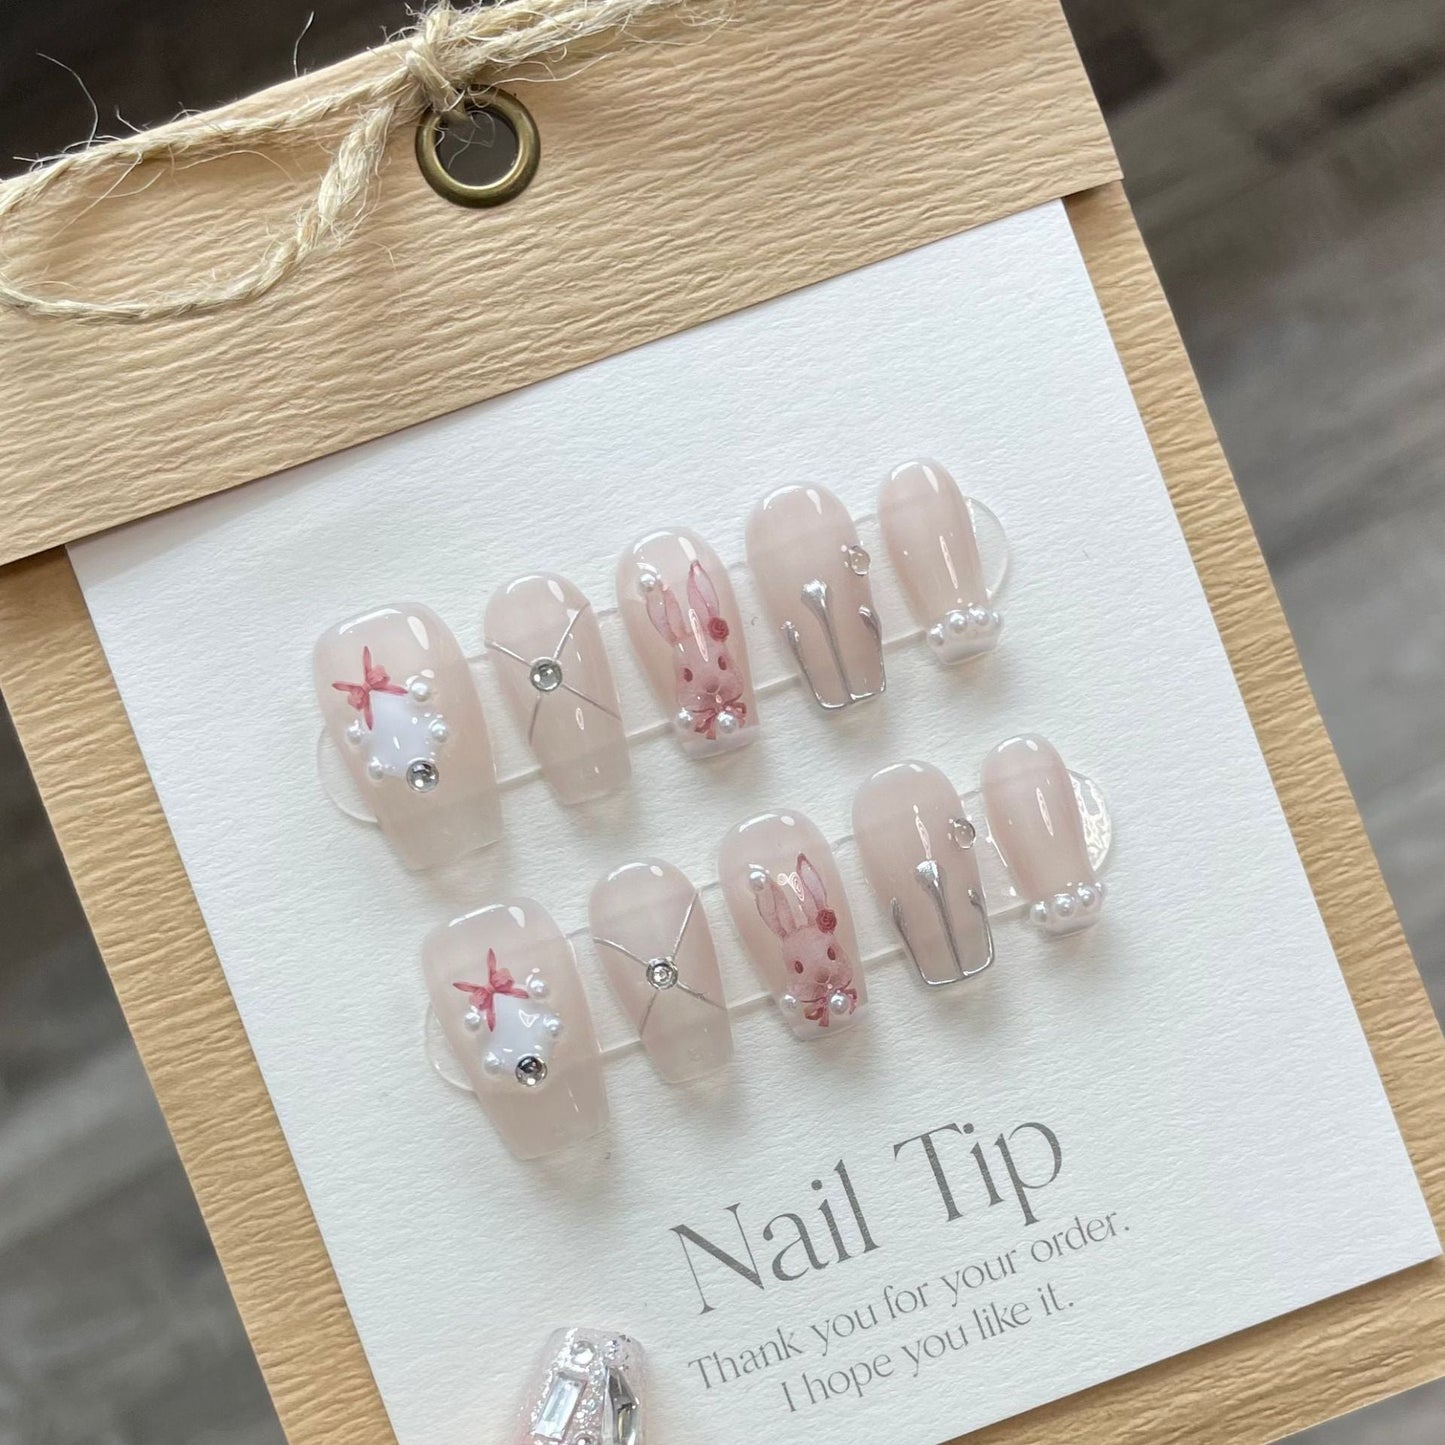 734 presse de style lapin sur les ongles 100% faux ongles faits à la main couleur nue rose